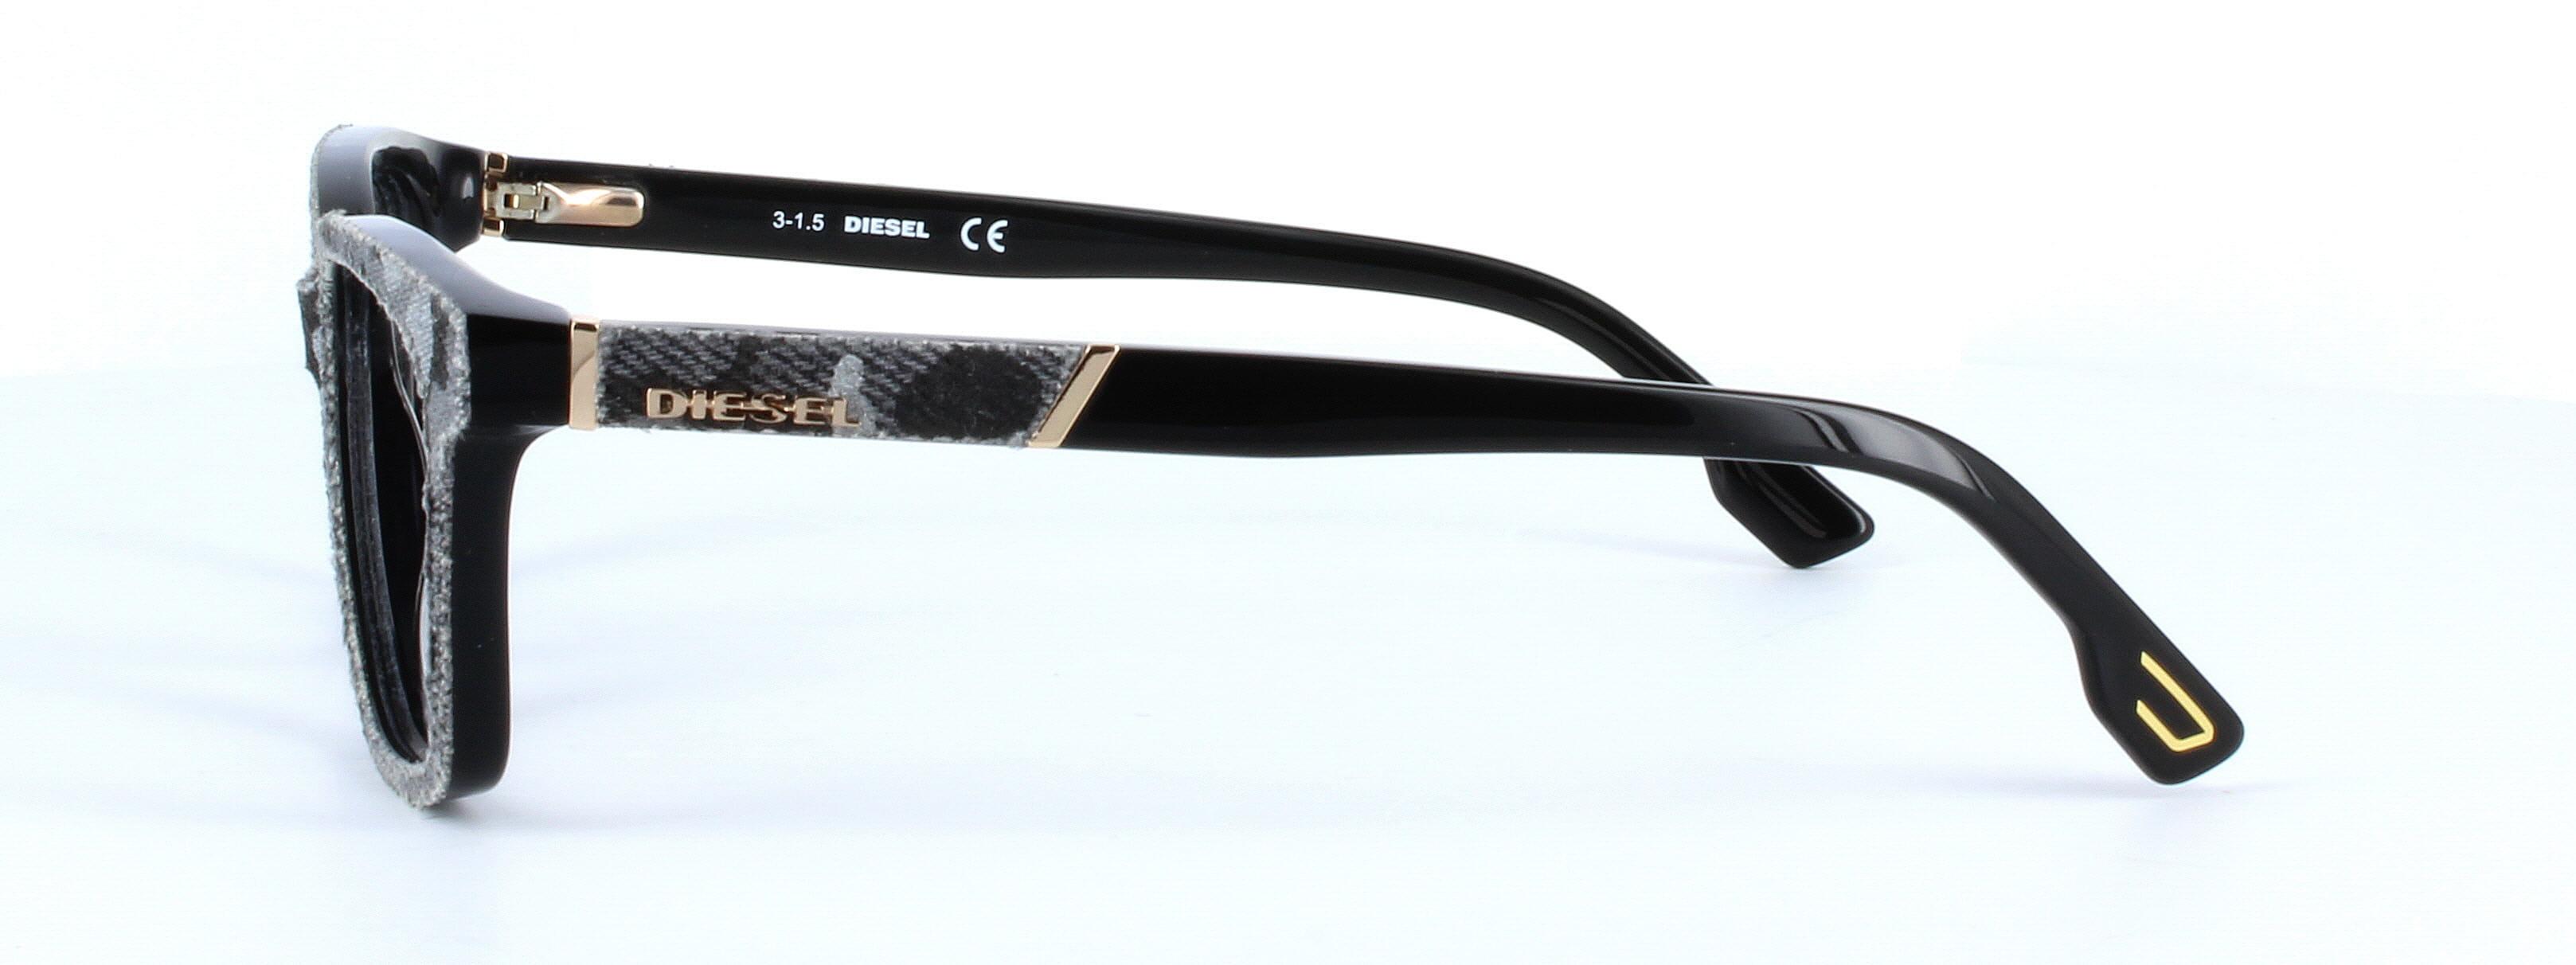 Diesel denimeye 5137 - ladies designer glasses in black/grey denim on acetate - image view 2